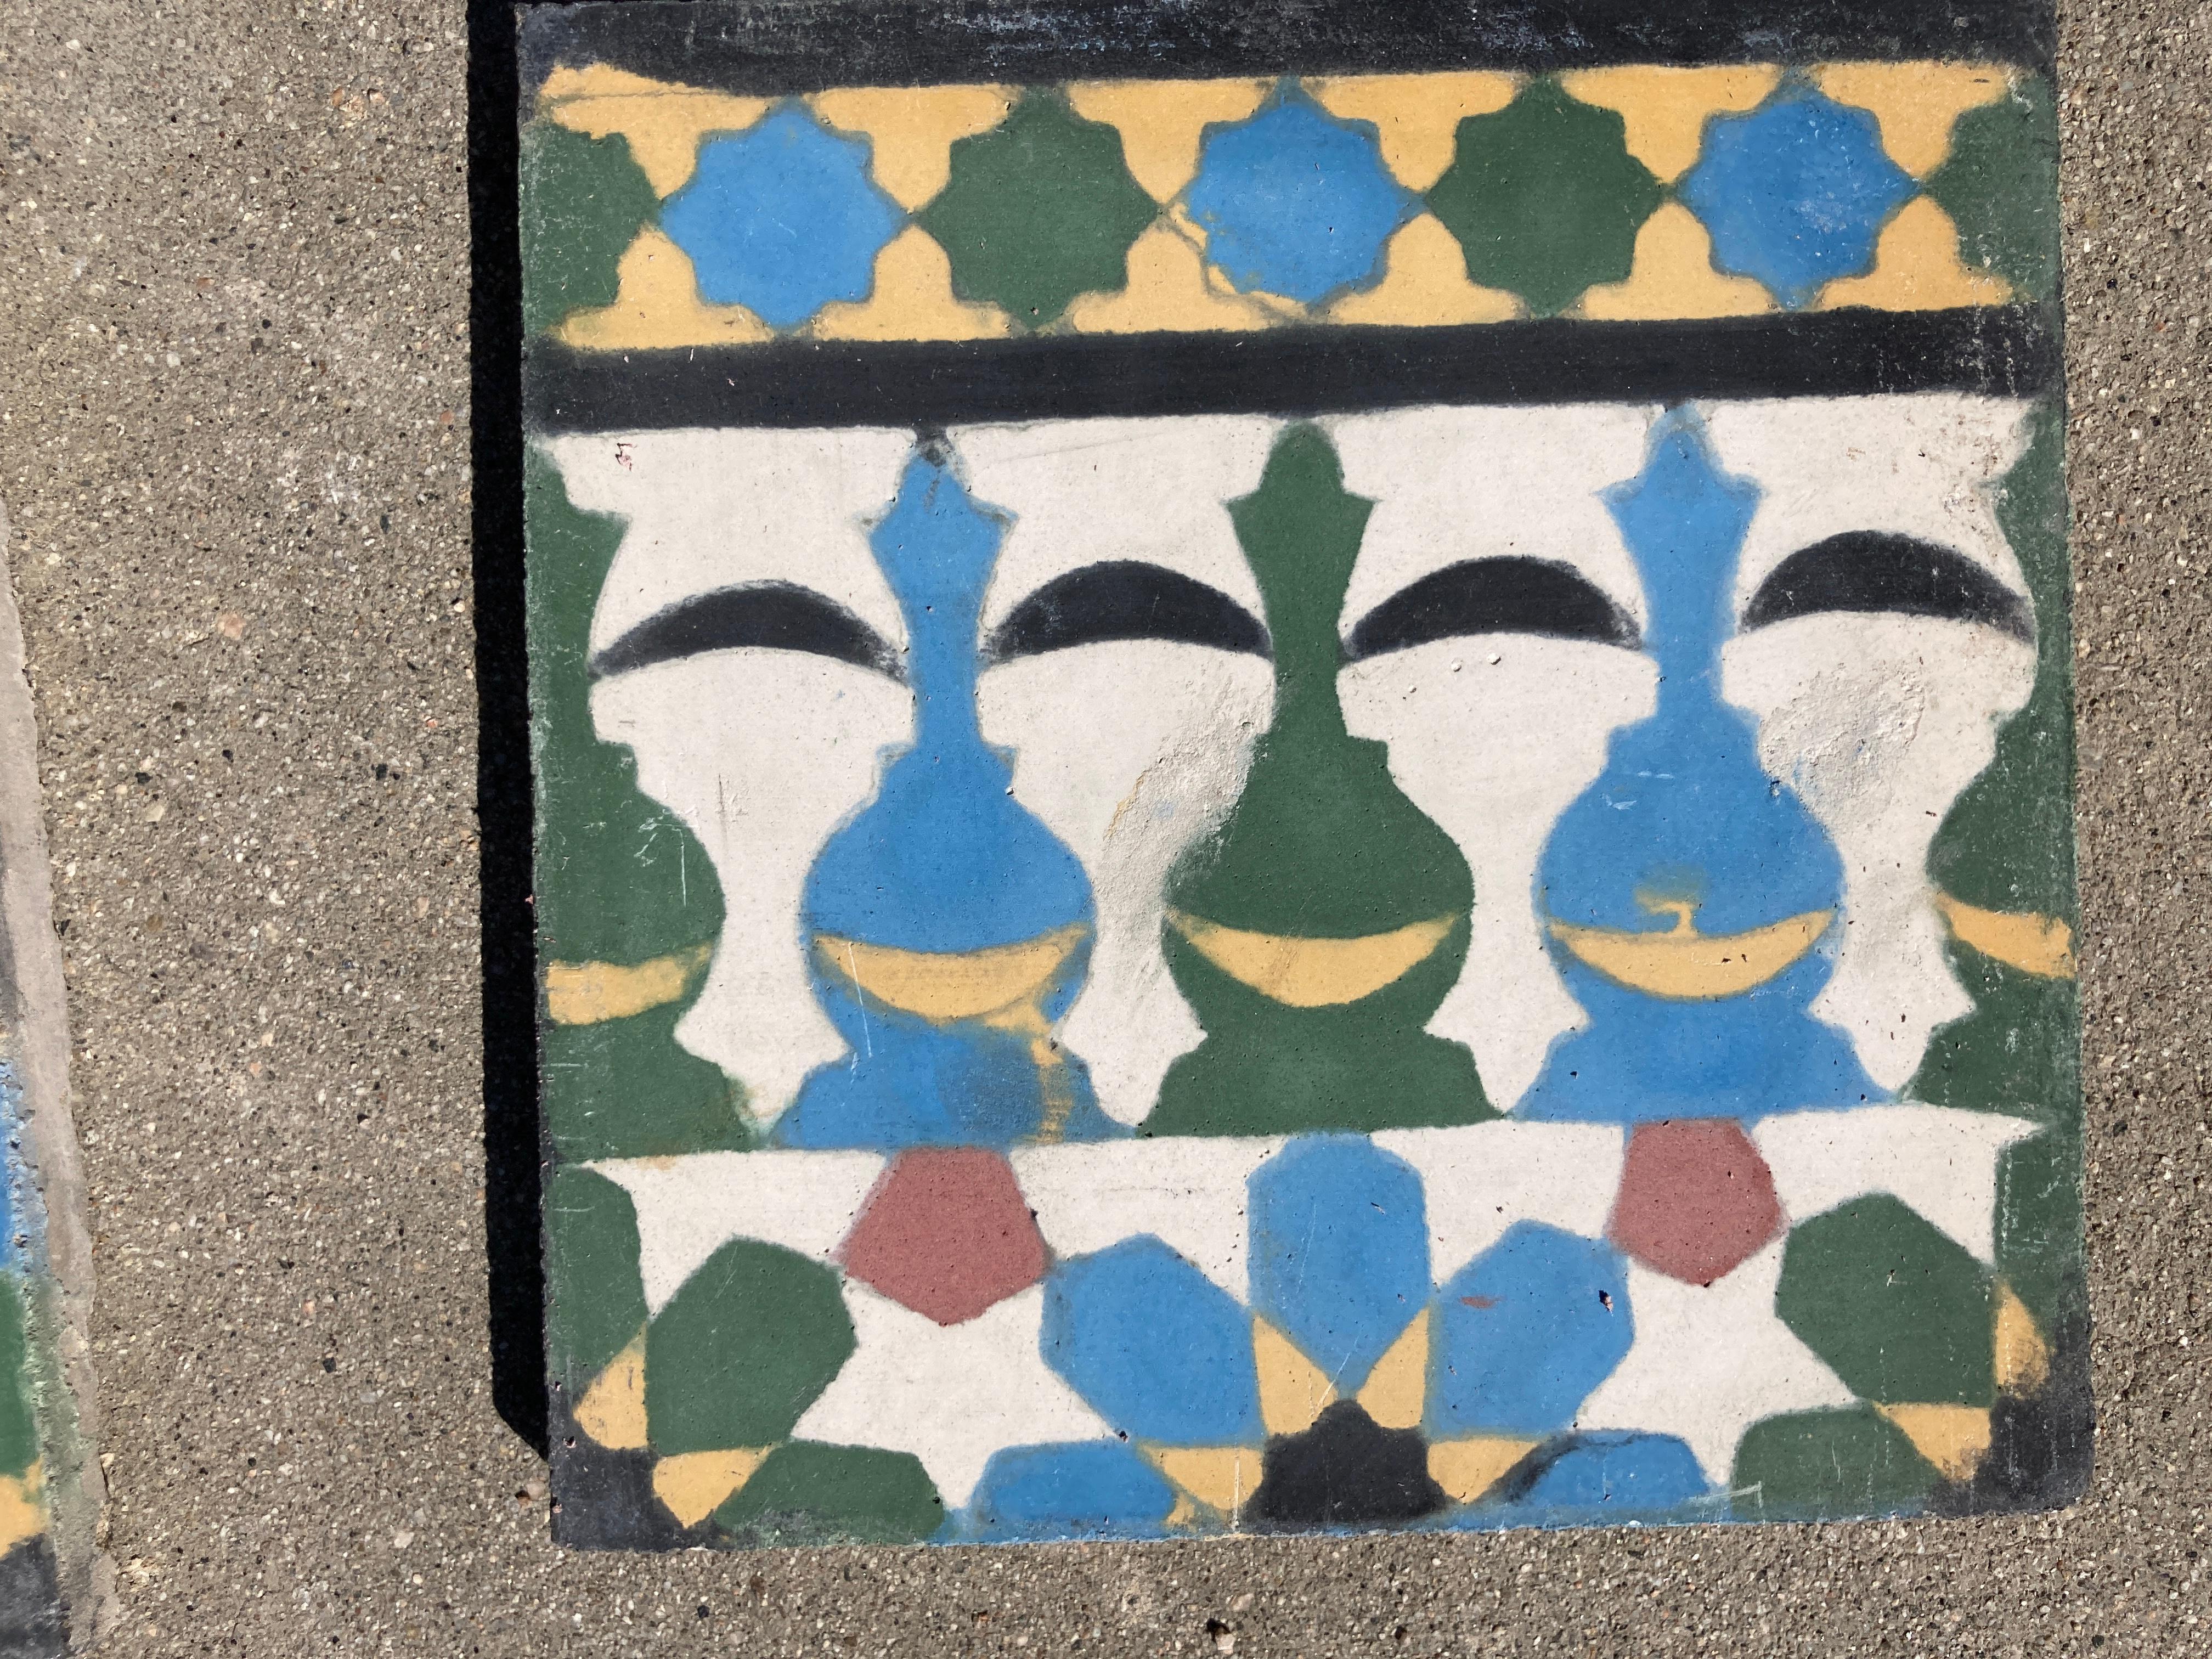 Marokkanische, handgefertigte Zementfliese mit traditionellem maurischem Design aus Fez.
Es handelt sich um authentische marokkanische Enkaustikfliesen, die von Kunsthandwerkern in Fez, Marokko, handgefertigt wurden.
Dies ist das traditionelle